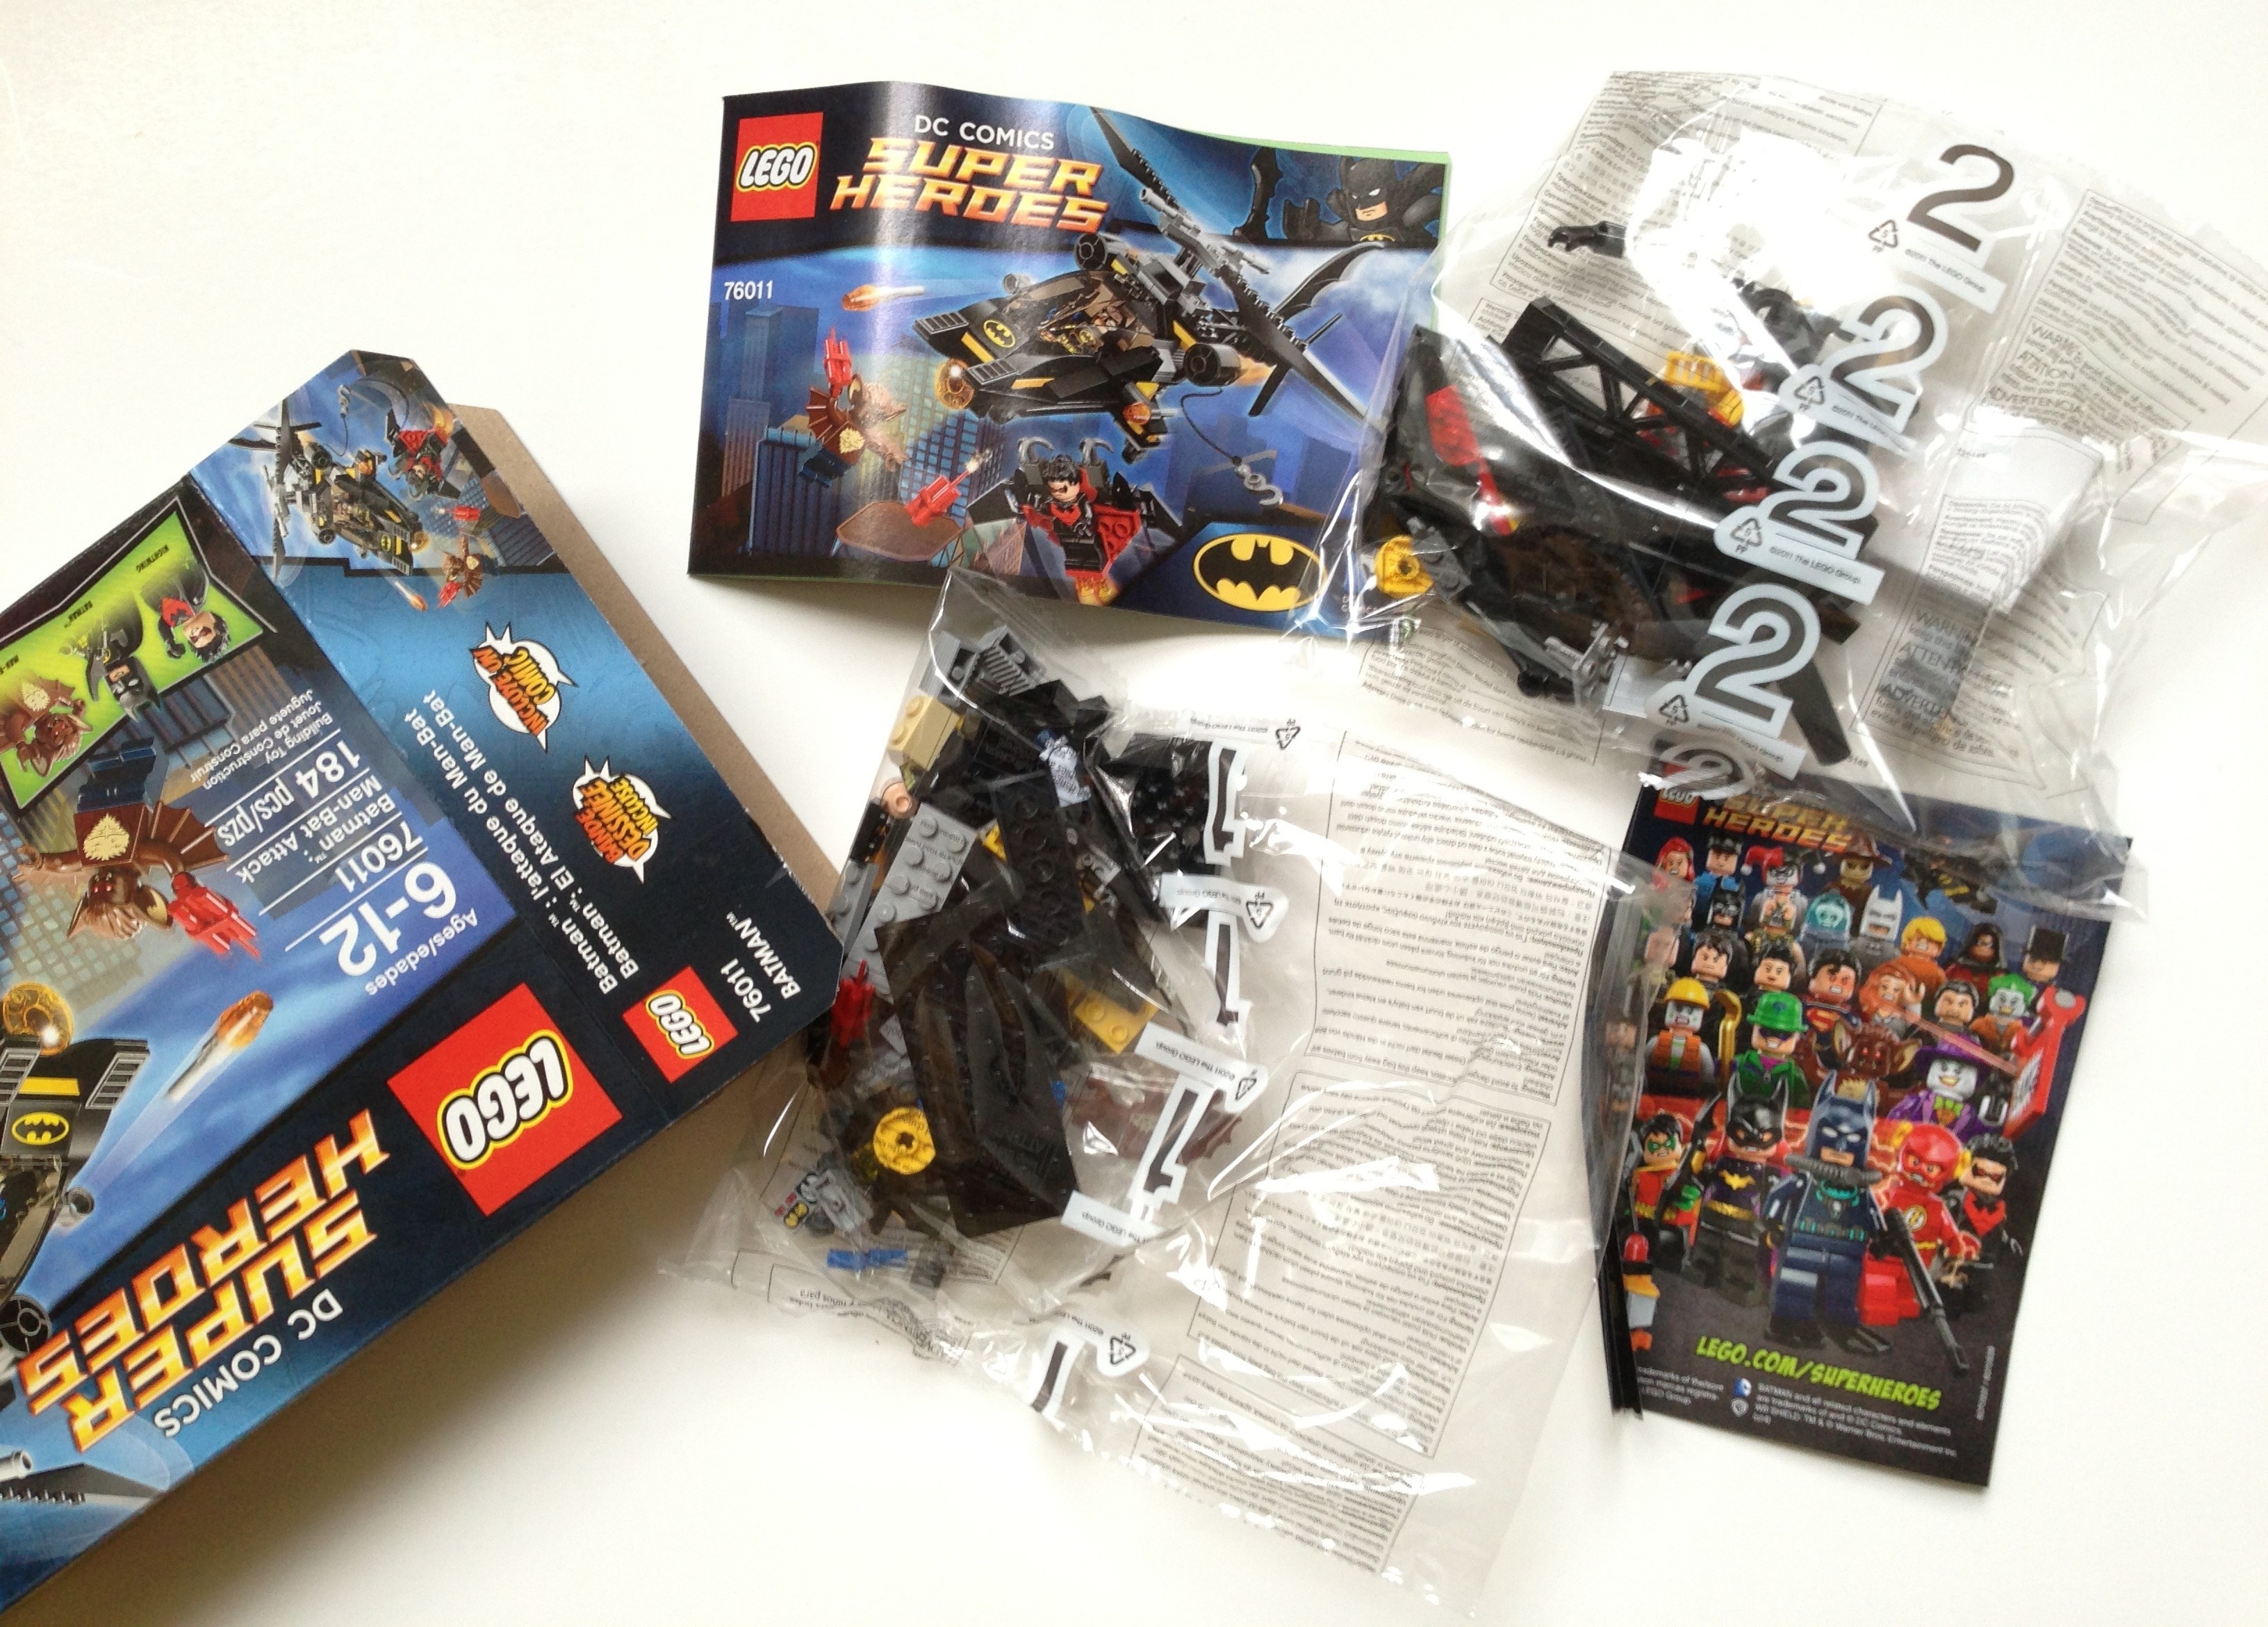 LEGO Superheroes 76011 Batman: Man-Bat Attack 